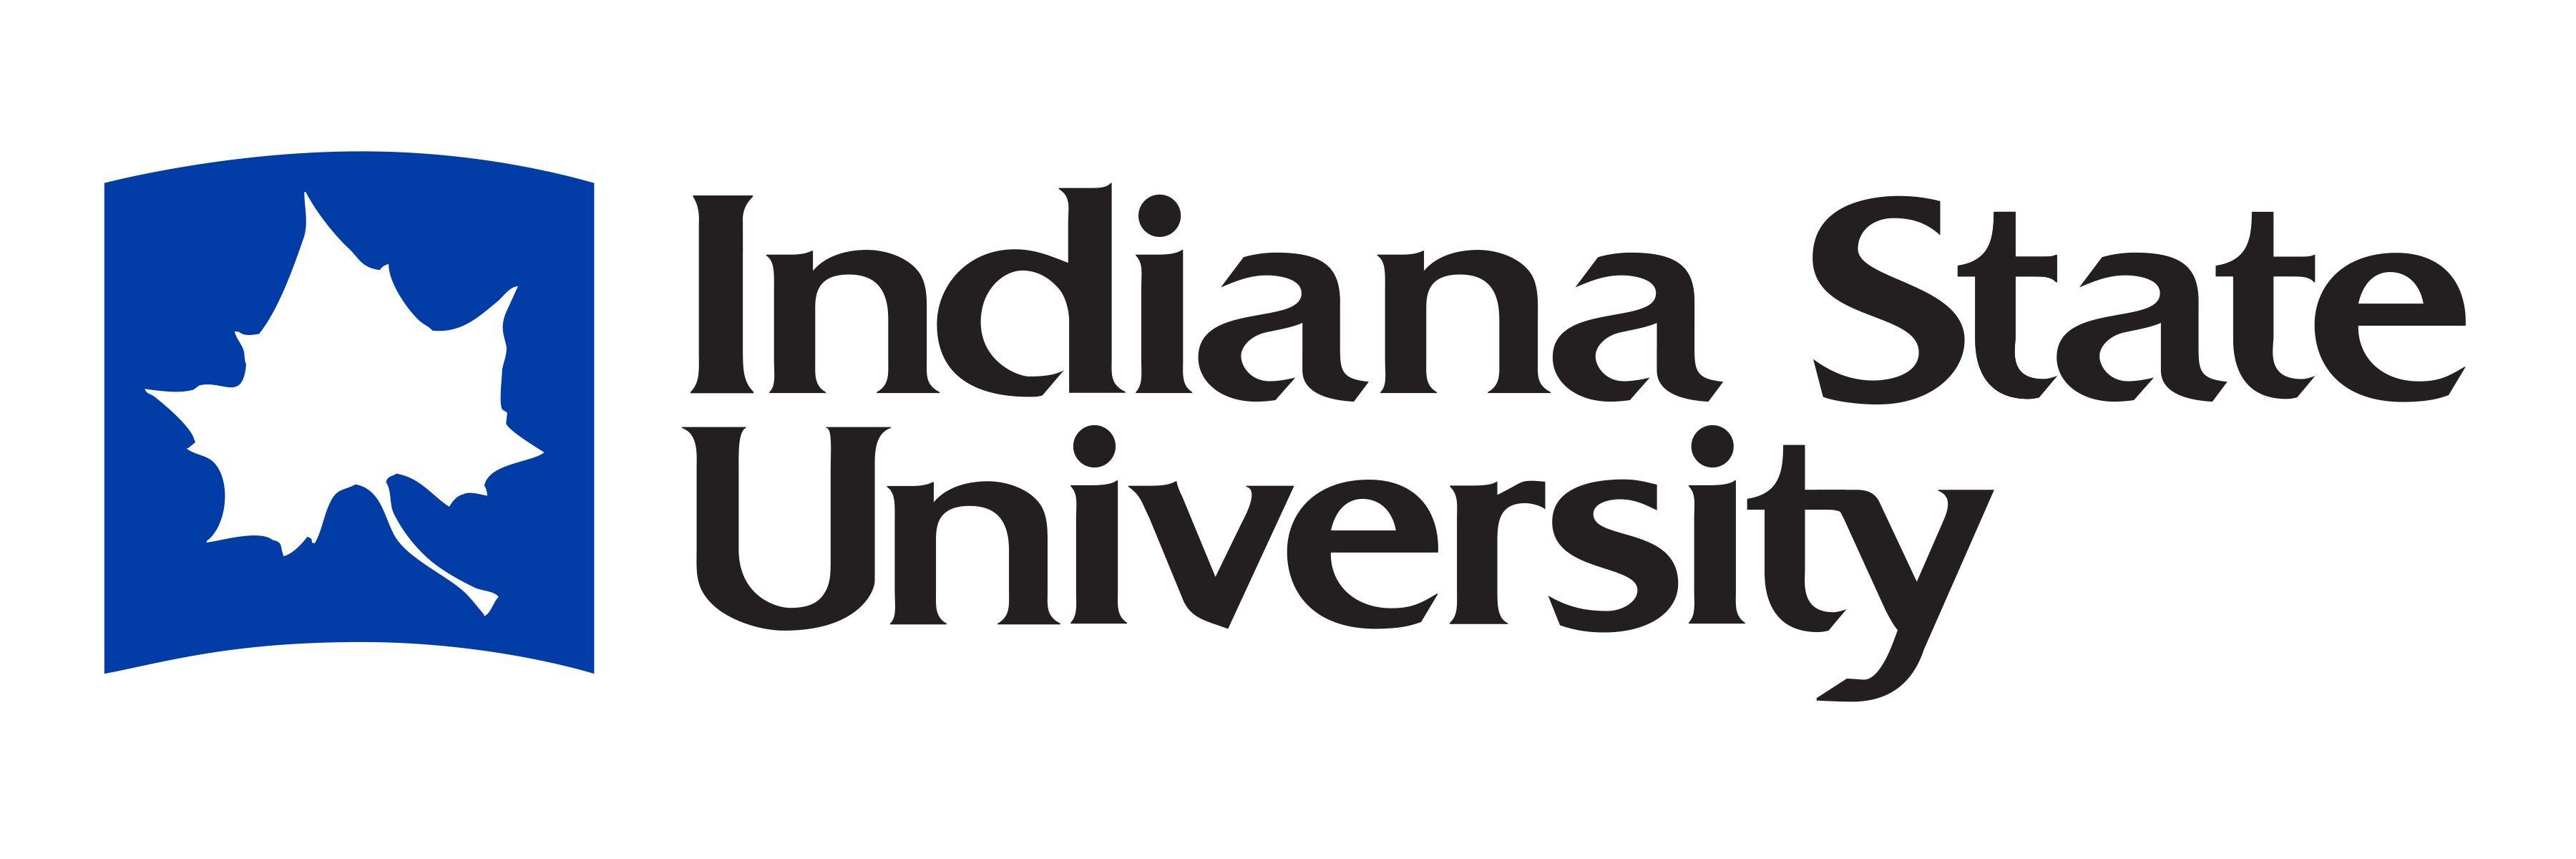 Indiana State Logo - Indiana State University Logo